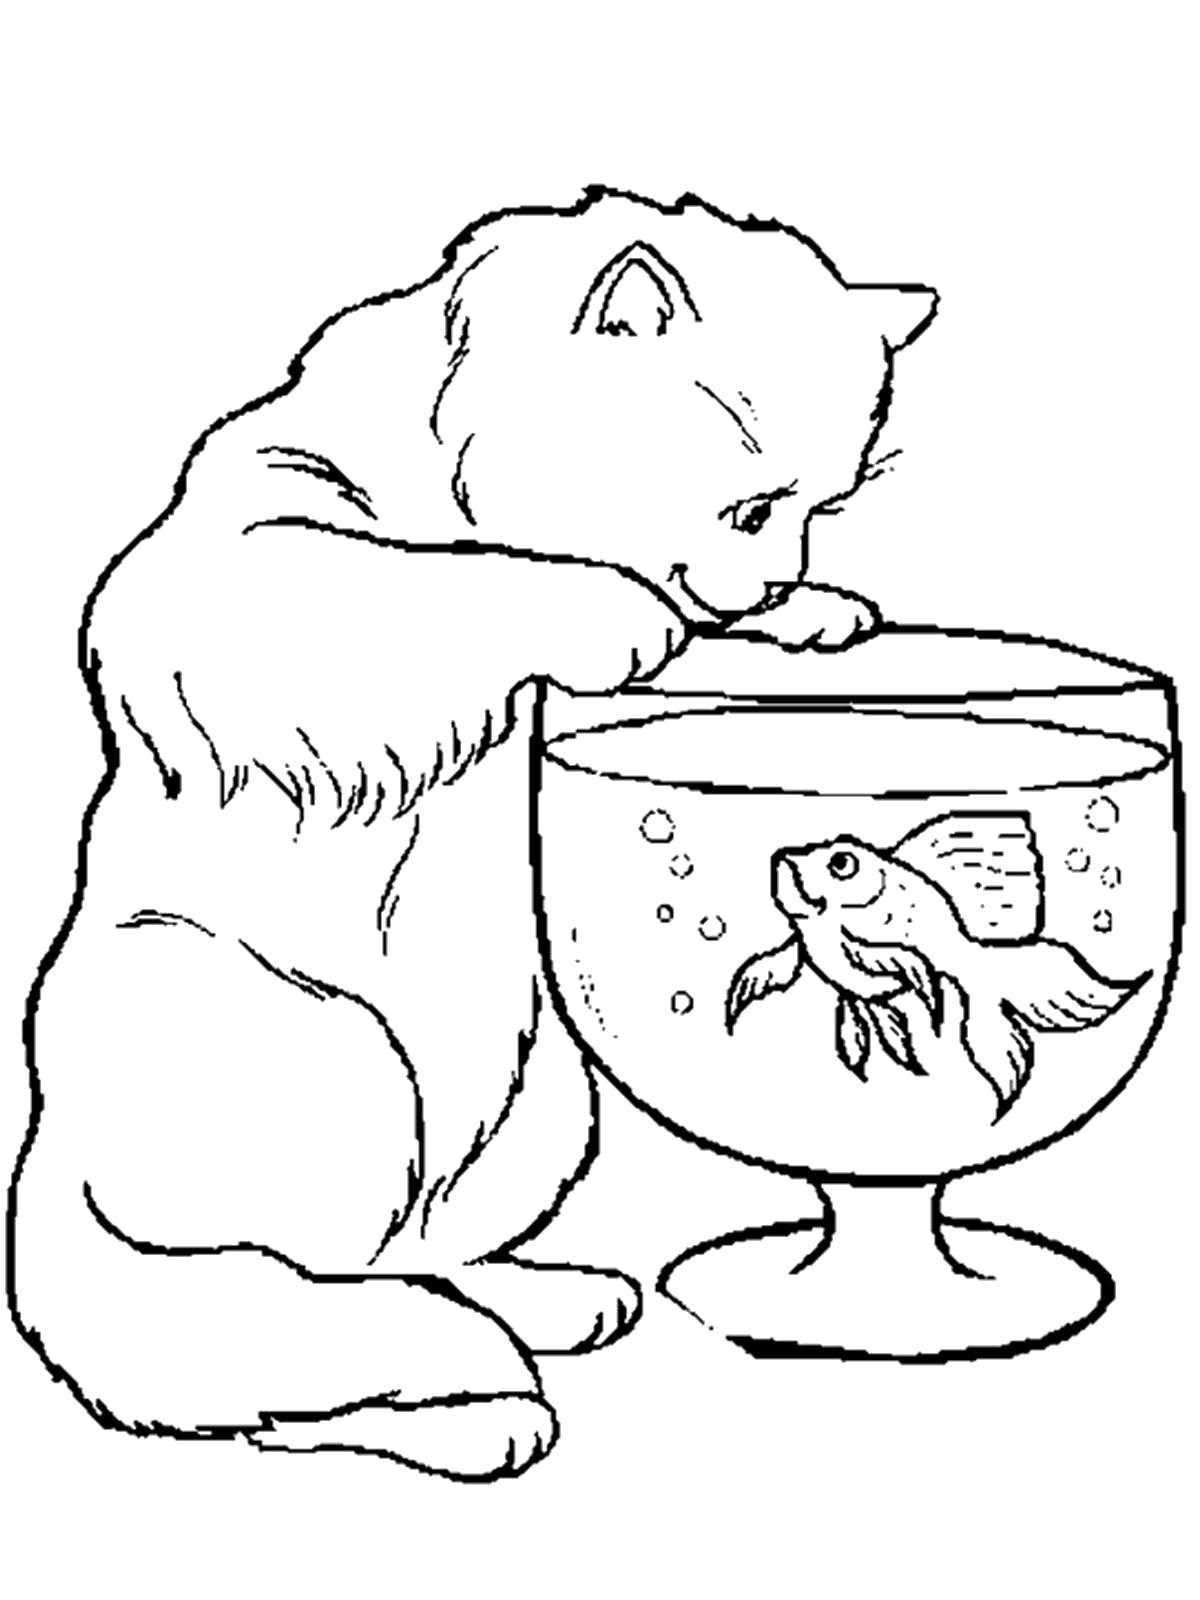 Название: Раскраска Кошка с рыбкой в аквариуме. Категория: домашние животные. Теги: кошка, аквариум, рыба.